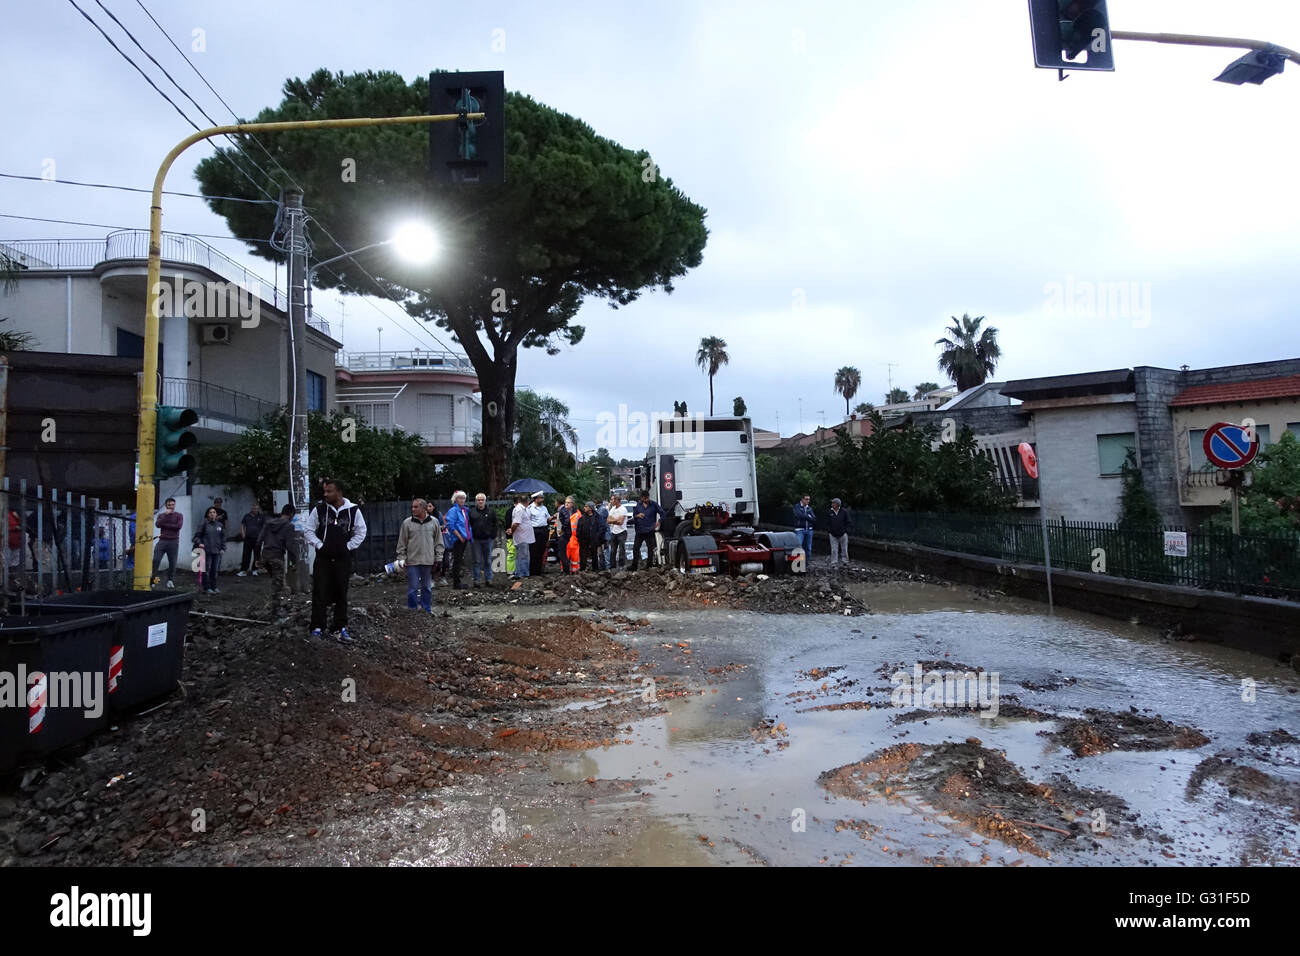 Aci Trezza, Italia, más inundados por el agua de lluvia y carreteras intransitables Foto de stock